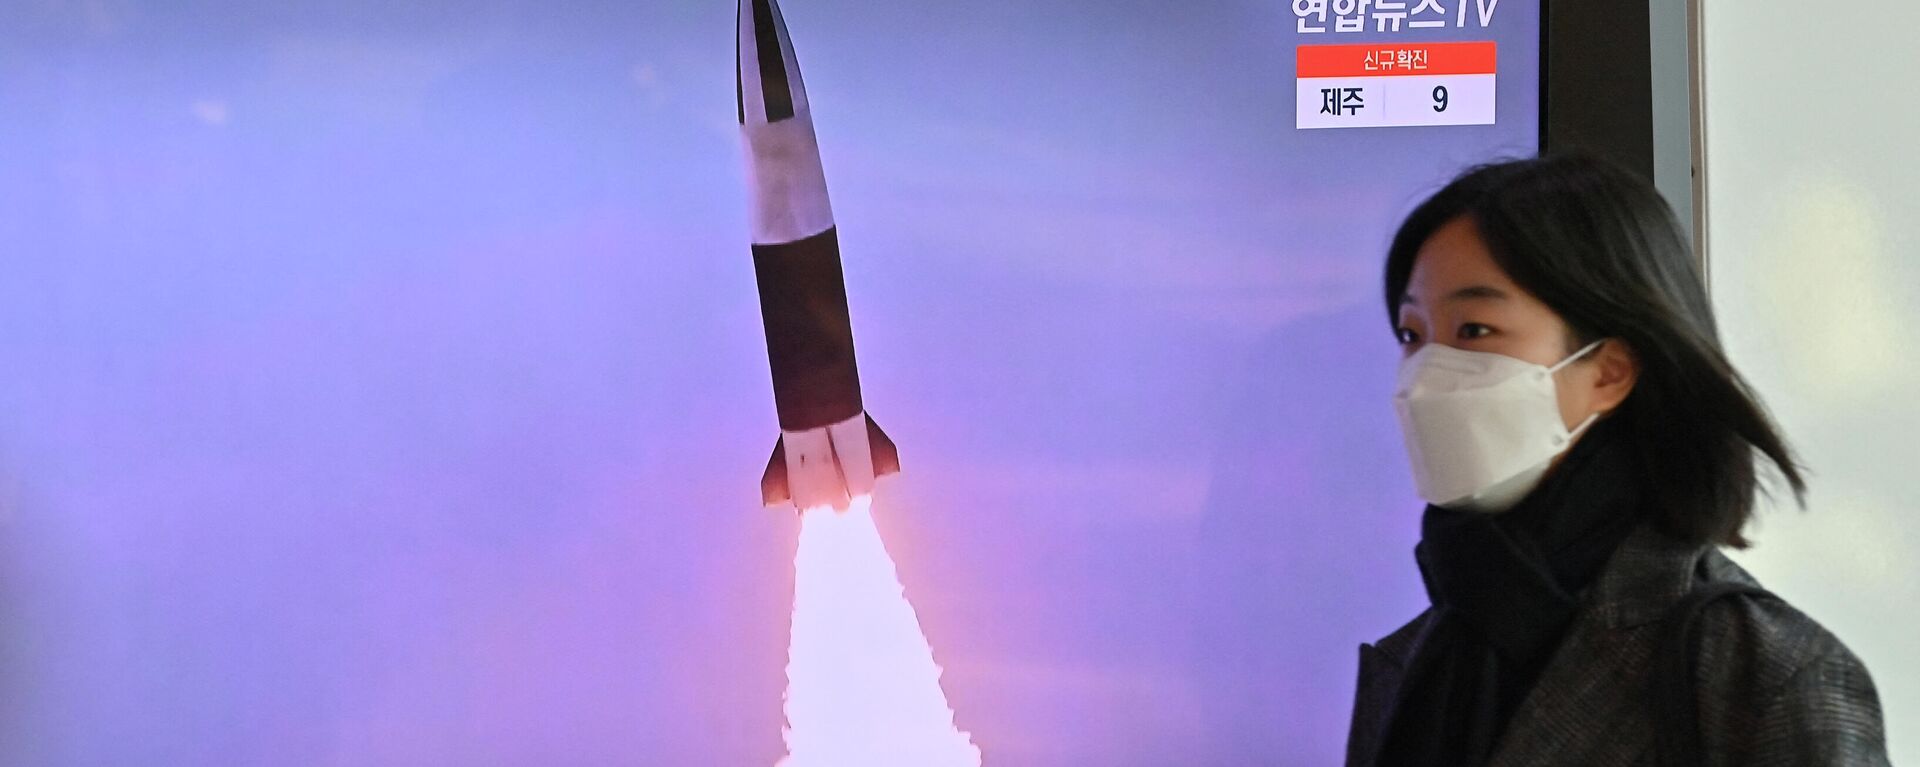 El lanzamiento del misil norcoreano - Sputnik Mundo, 1920, 28.01.2022